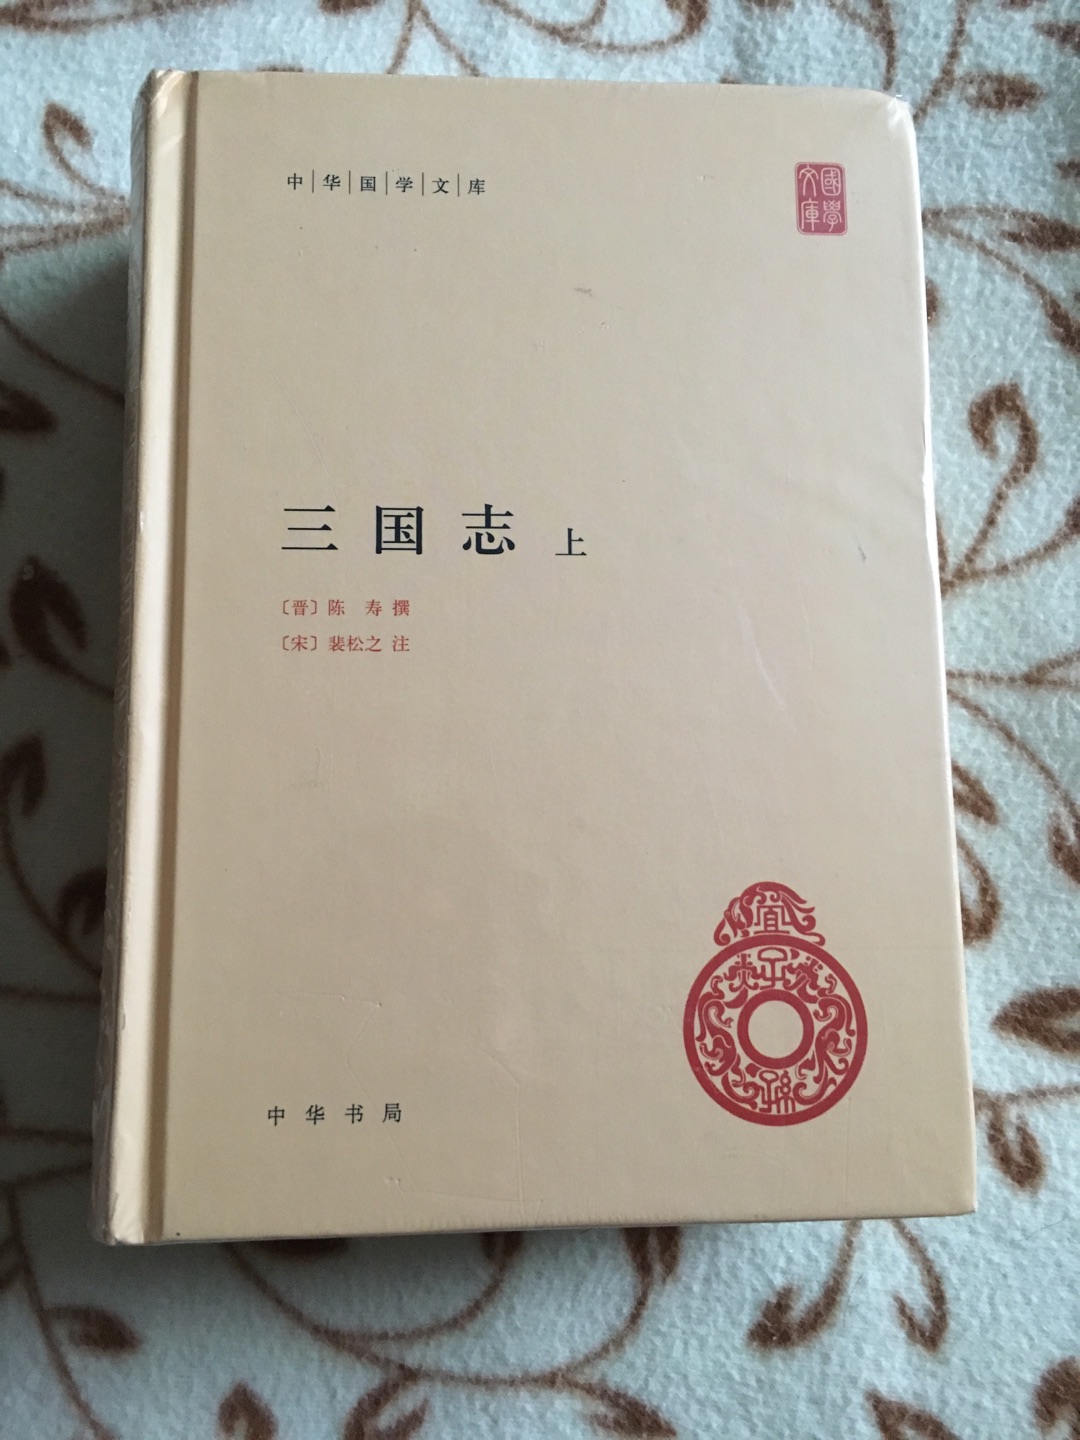 中华书局的精装古典文学，始终值得拥有，活动一来，果断出手。演义具有观赏性，看历史还是要读经典书。